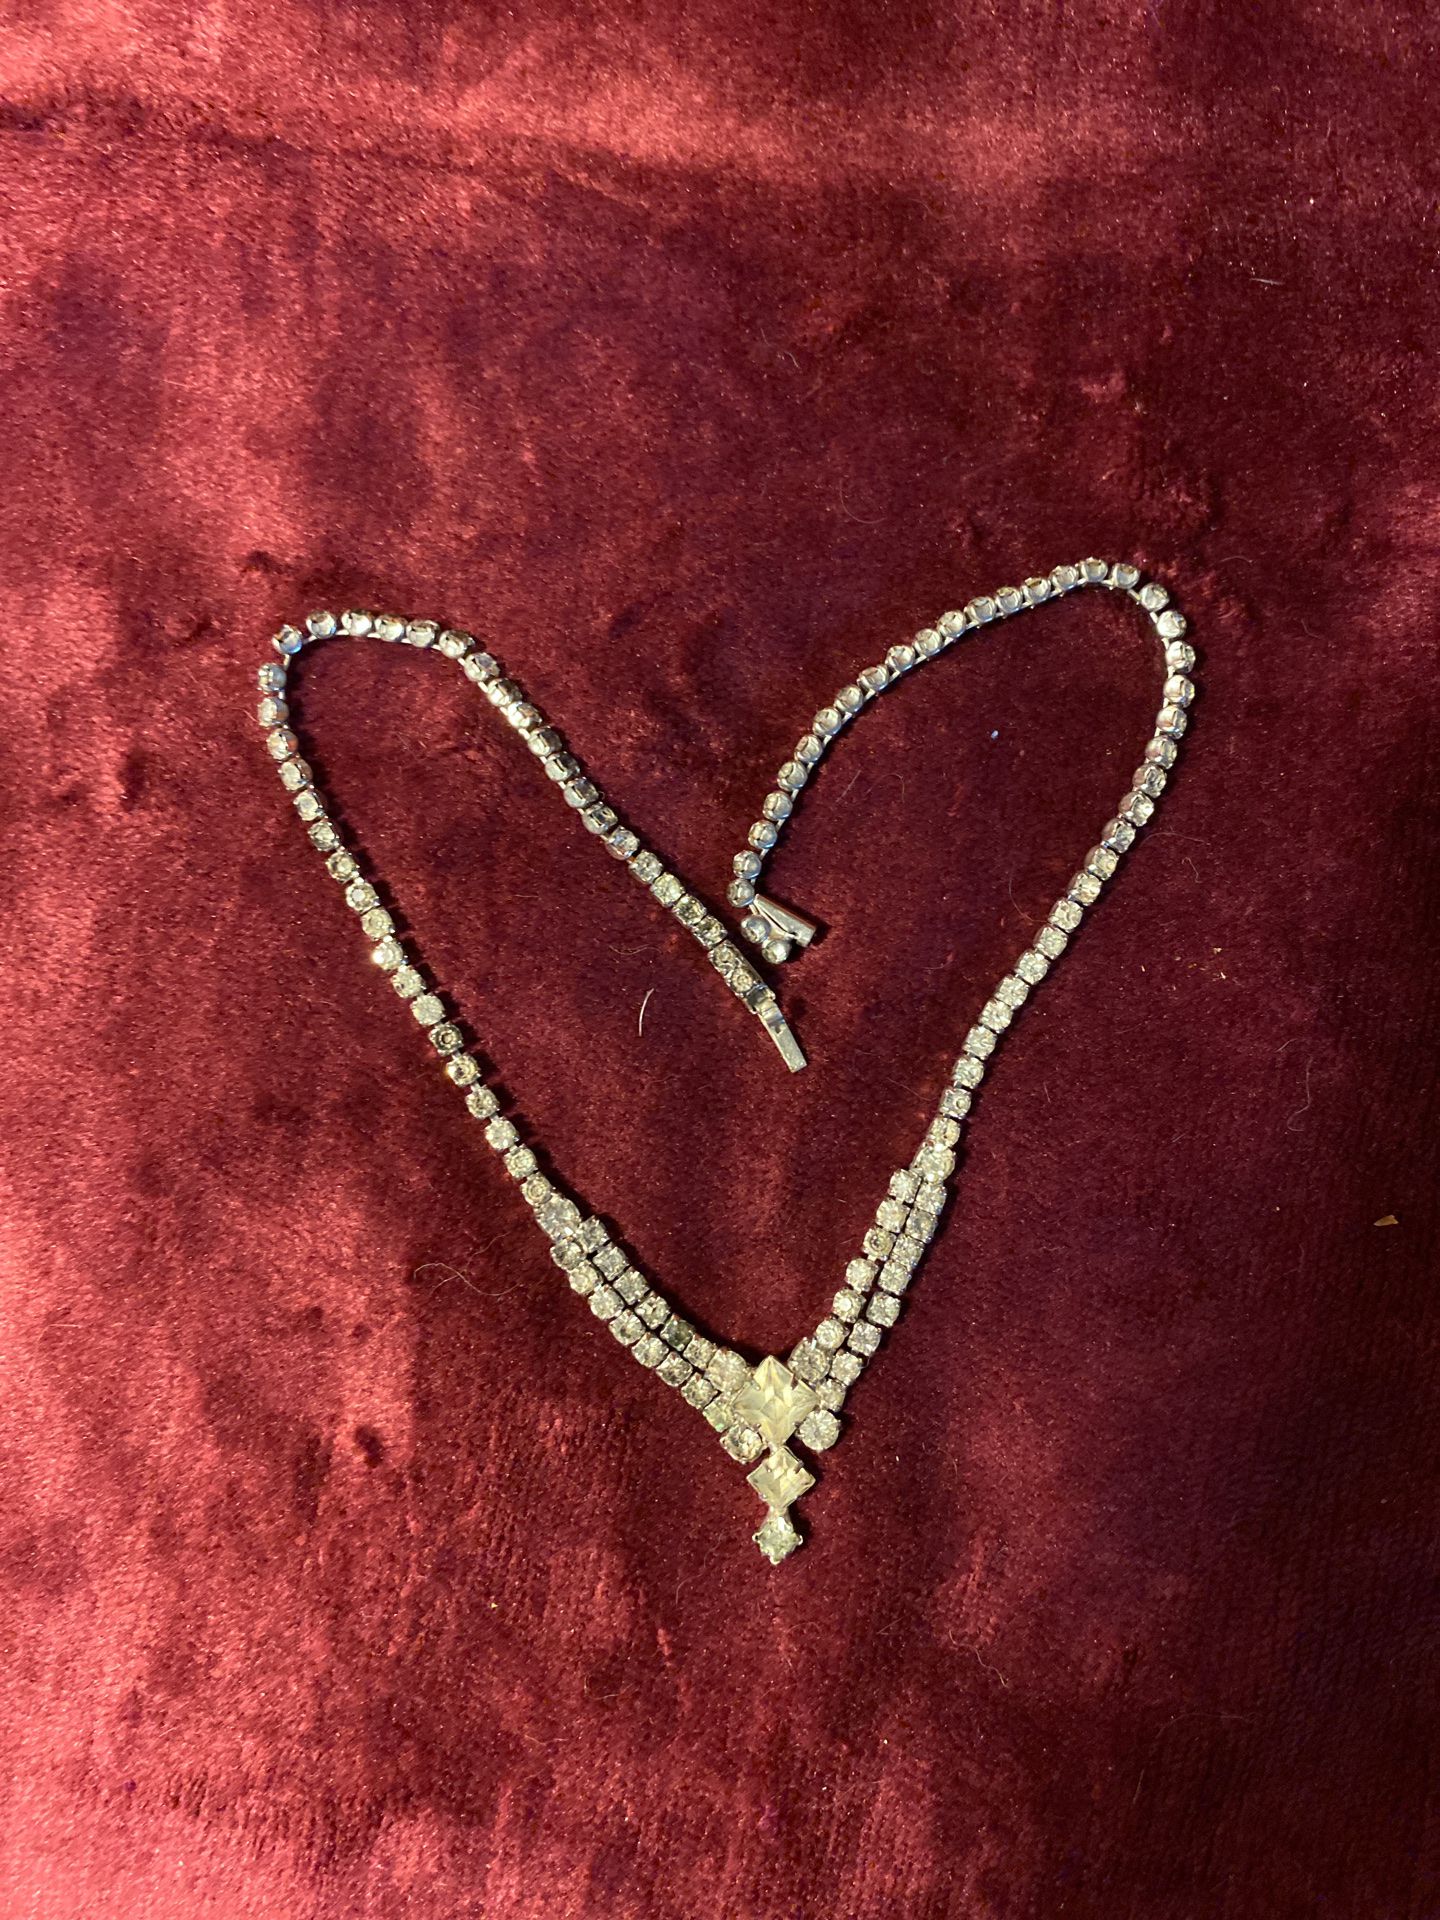 Old rhinestone necklace.